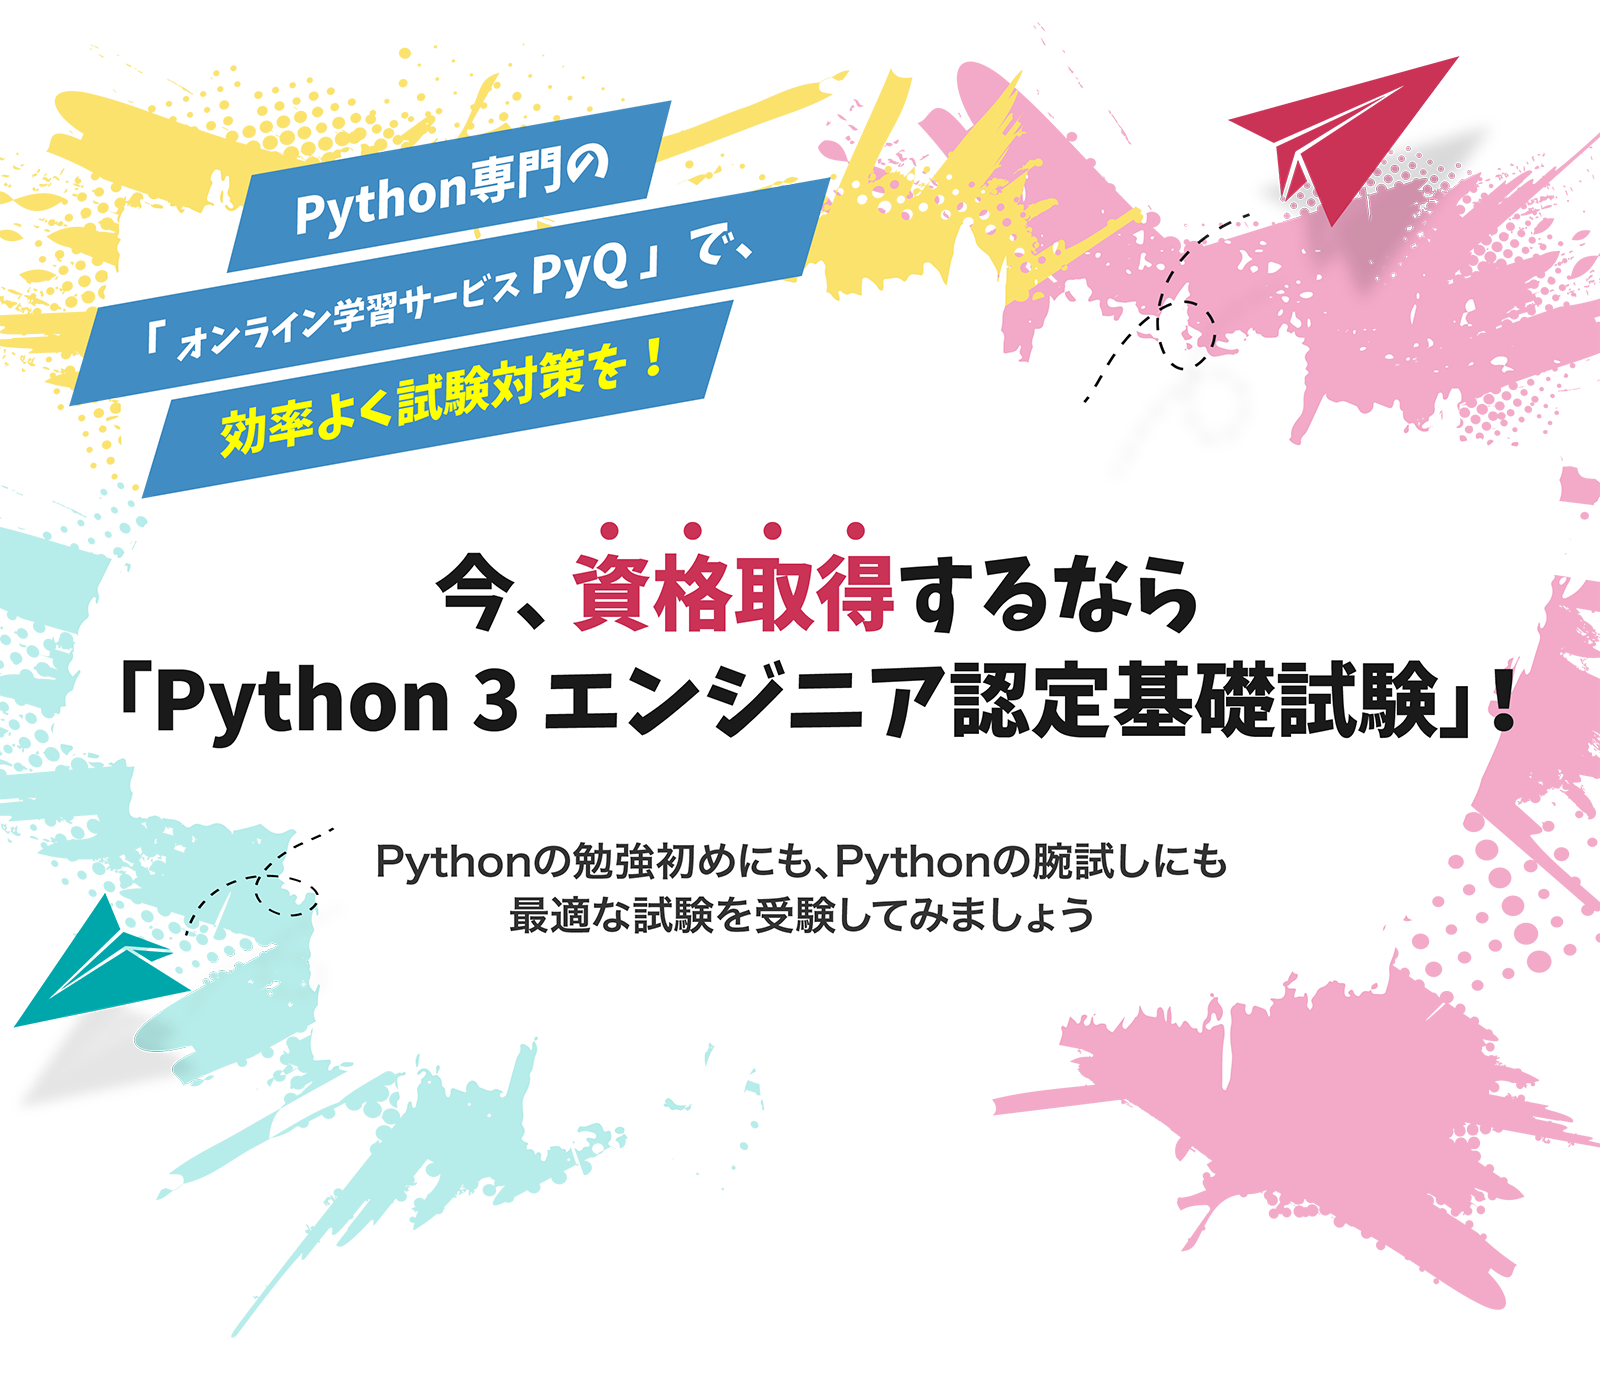 Python専門のオンライン学習サービスPyQ（パイキュー）で、効率よく試験対策を。今、資格取得するなら「Python3エンジニア認定基礎試験」。Python勉強の入門にも、腕試しにも最適な試験を受験してみましょう